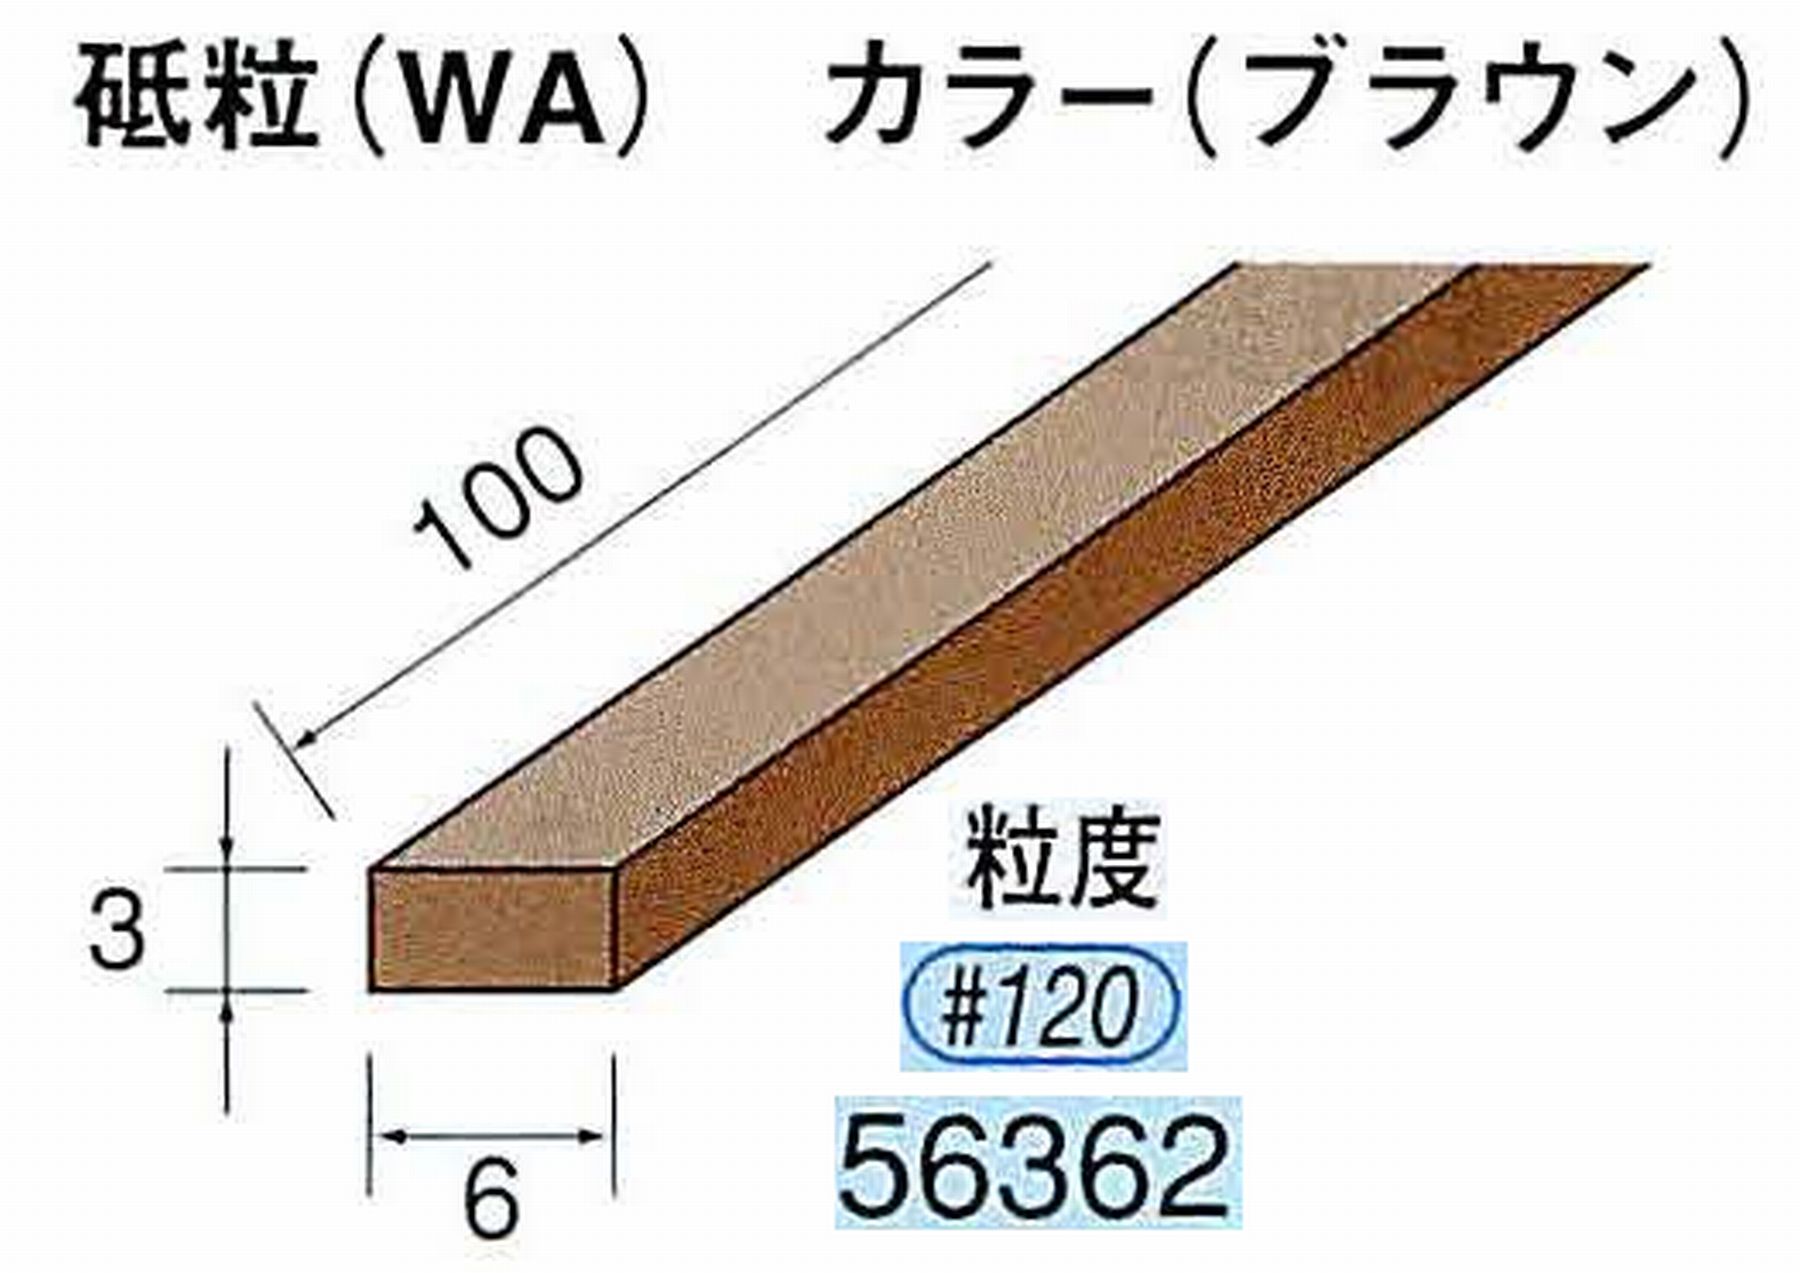 ナカニシ/NAKANISHI スティック砥石 ブラウン・フィニッシュシリーズ 砥粒(WA) 56362